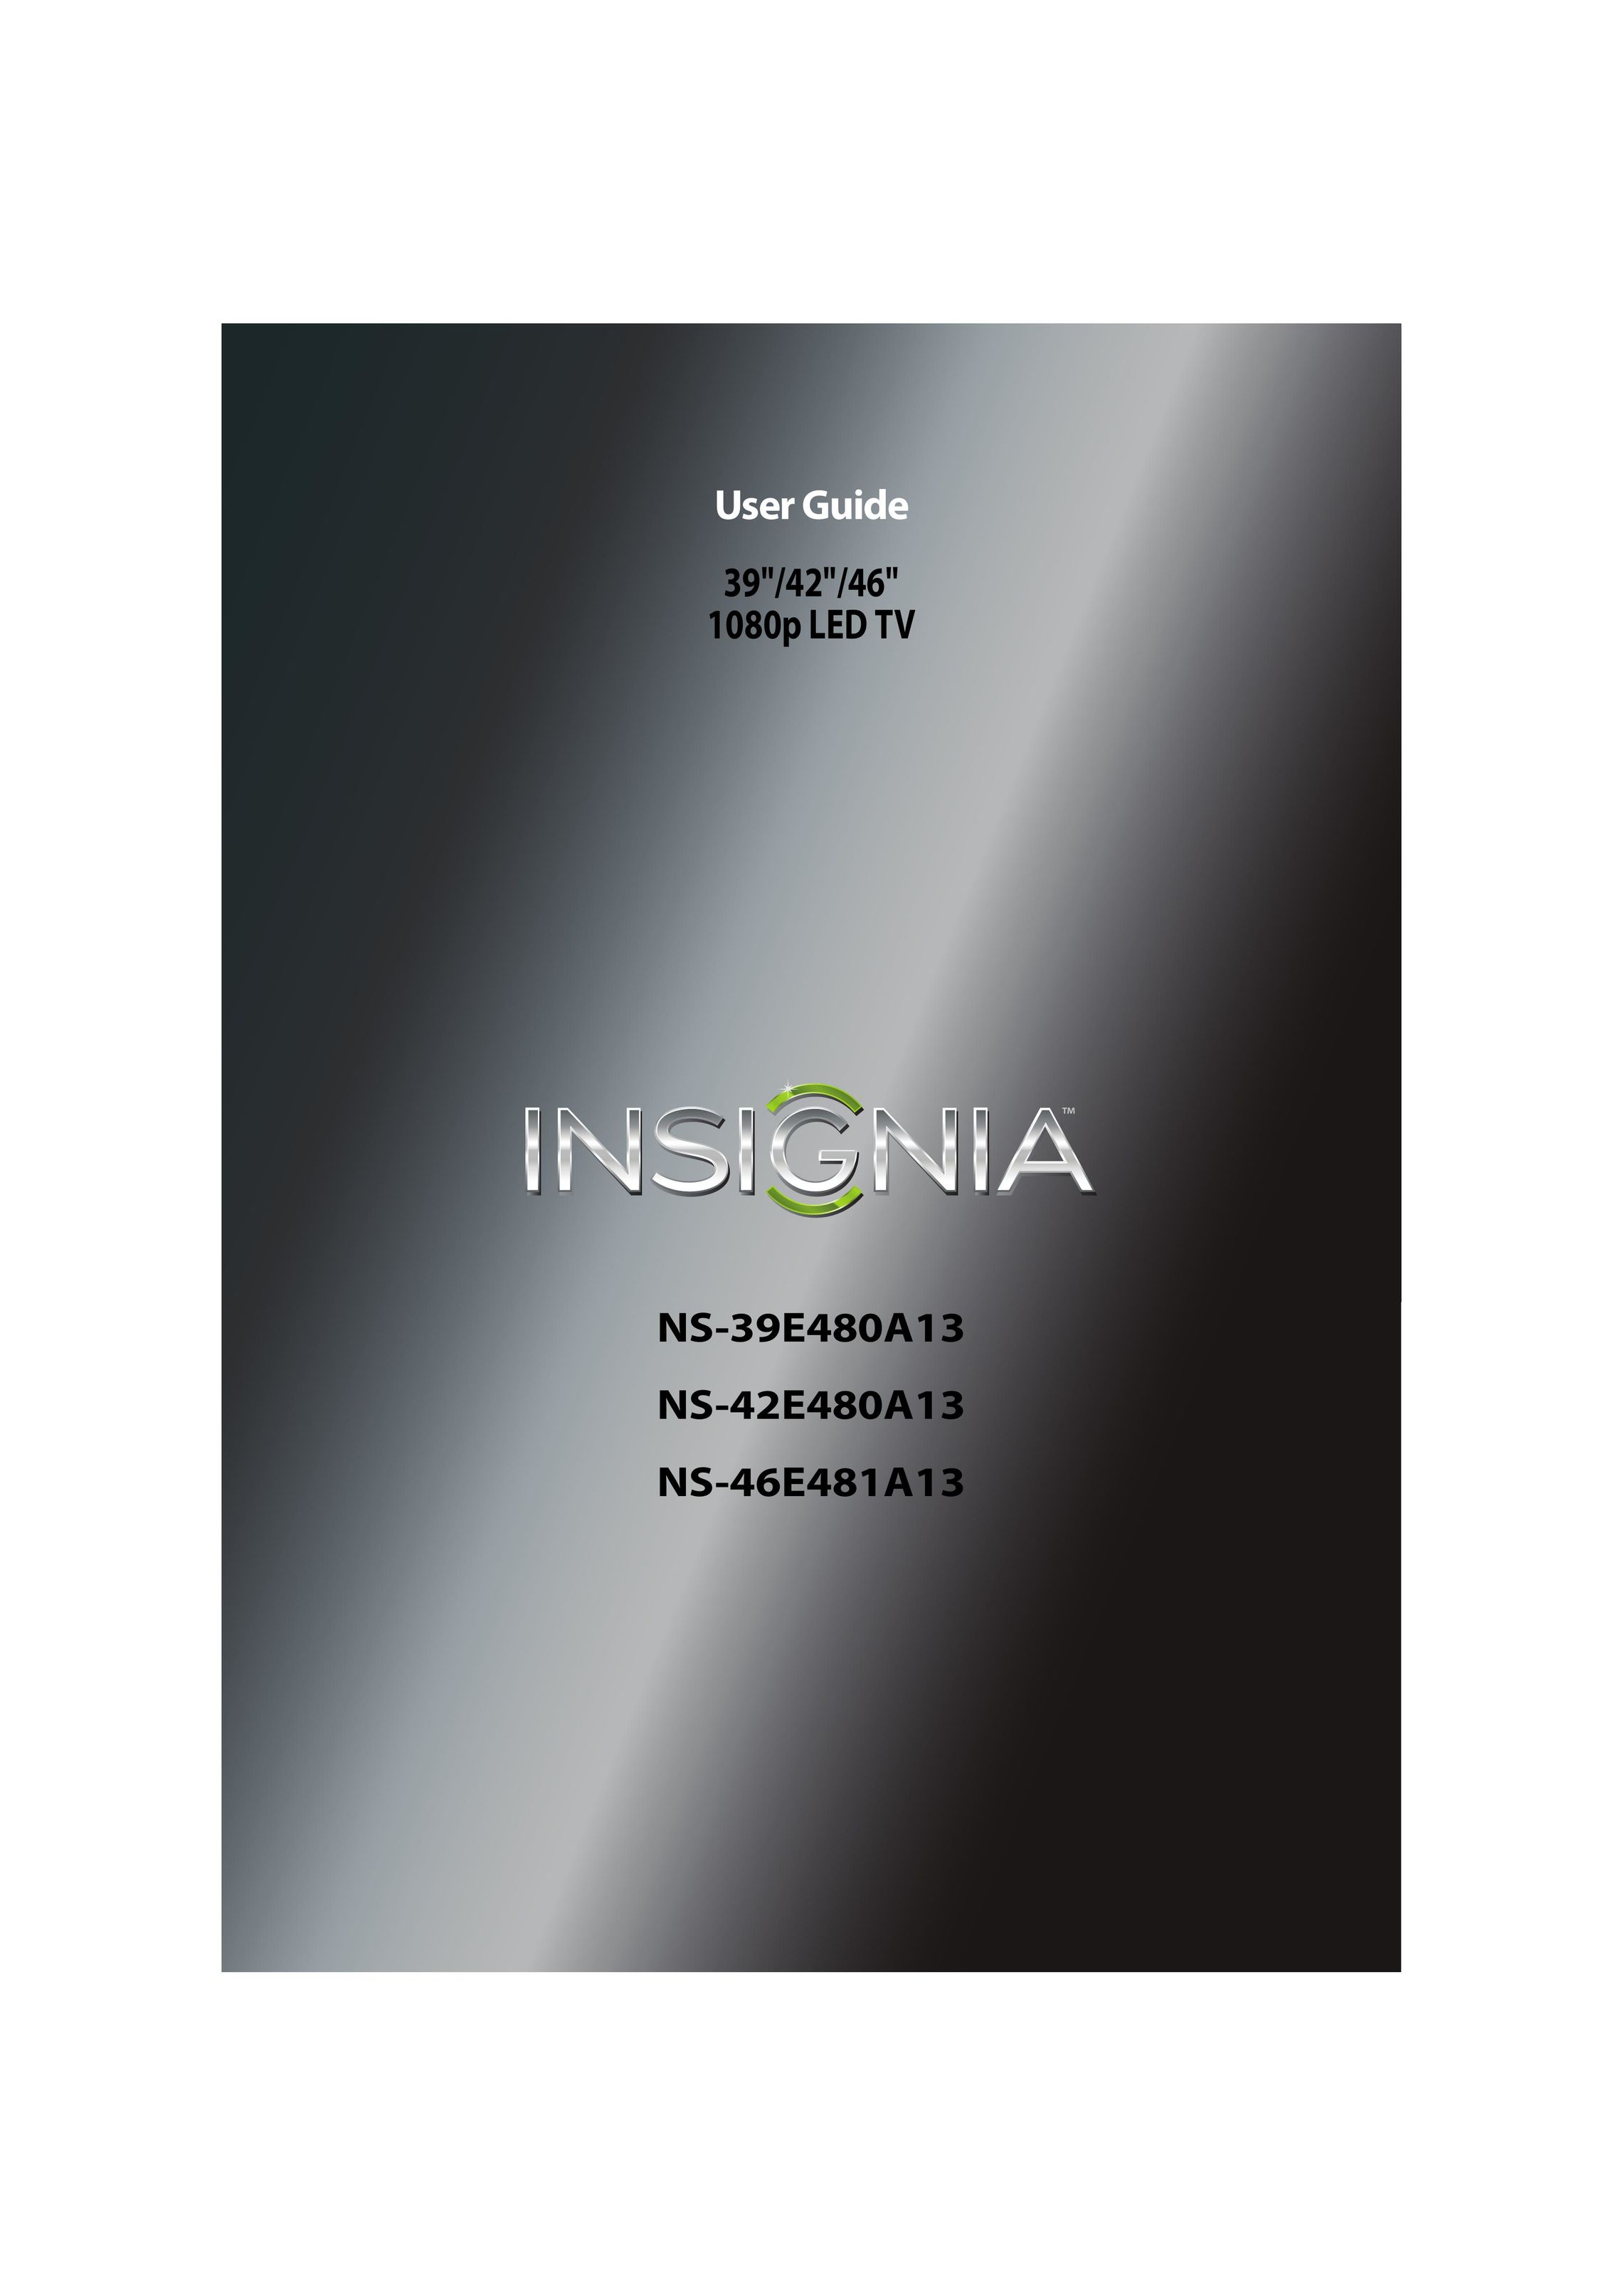 Insignia NS-42E480A13 TV Antenna User Manual